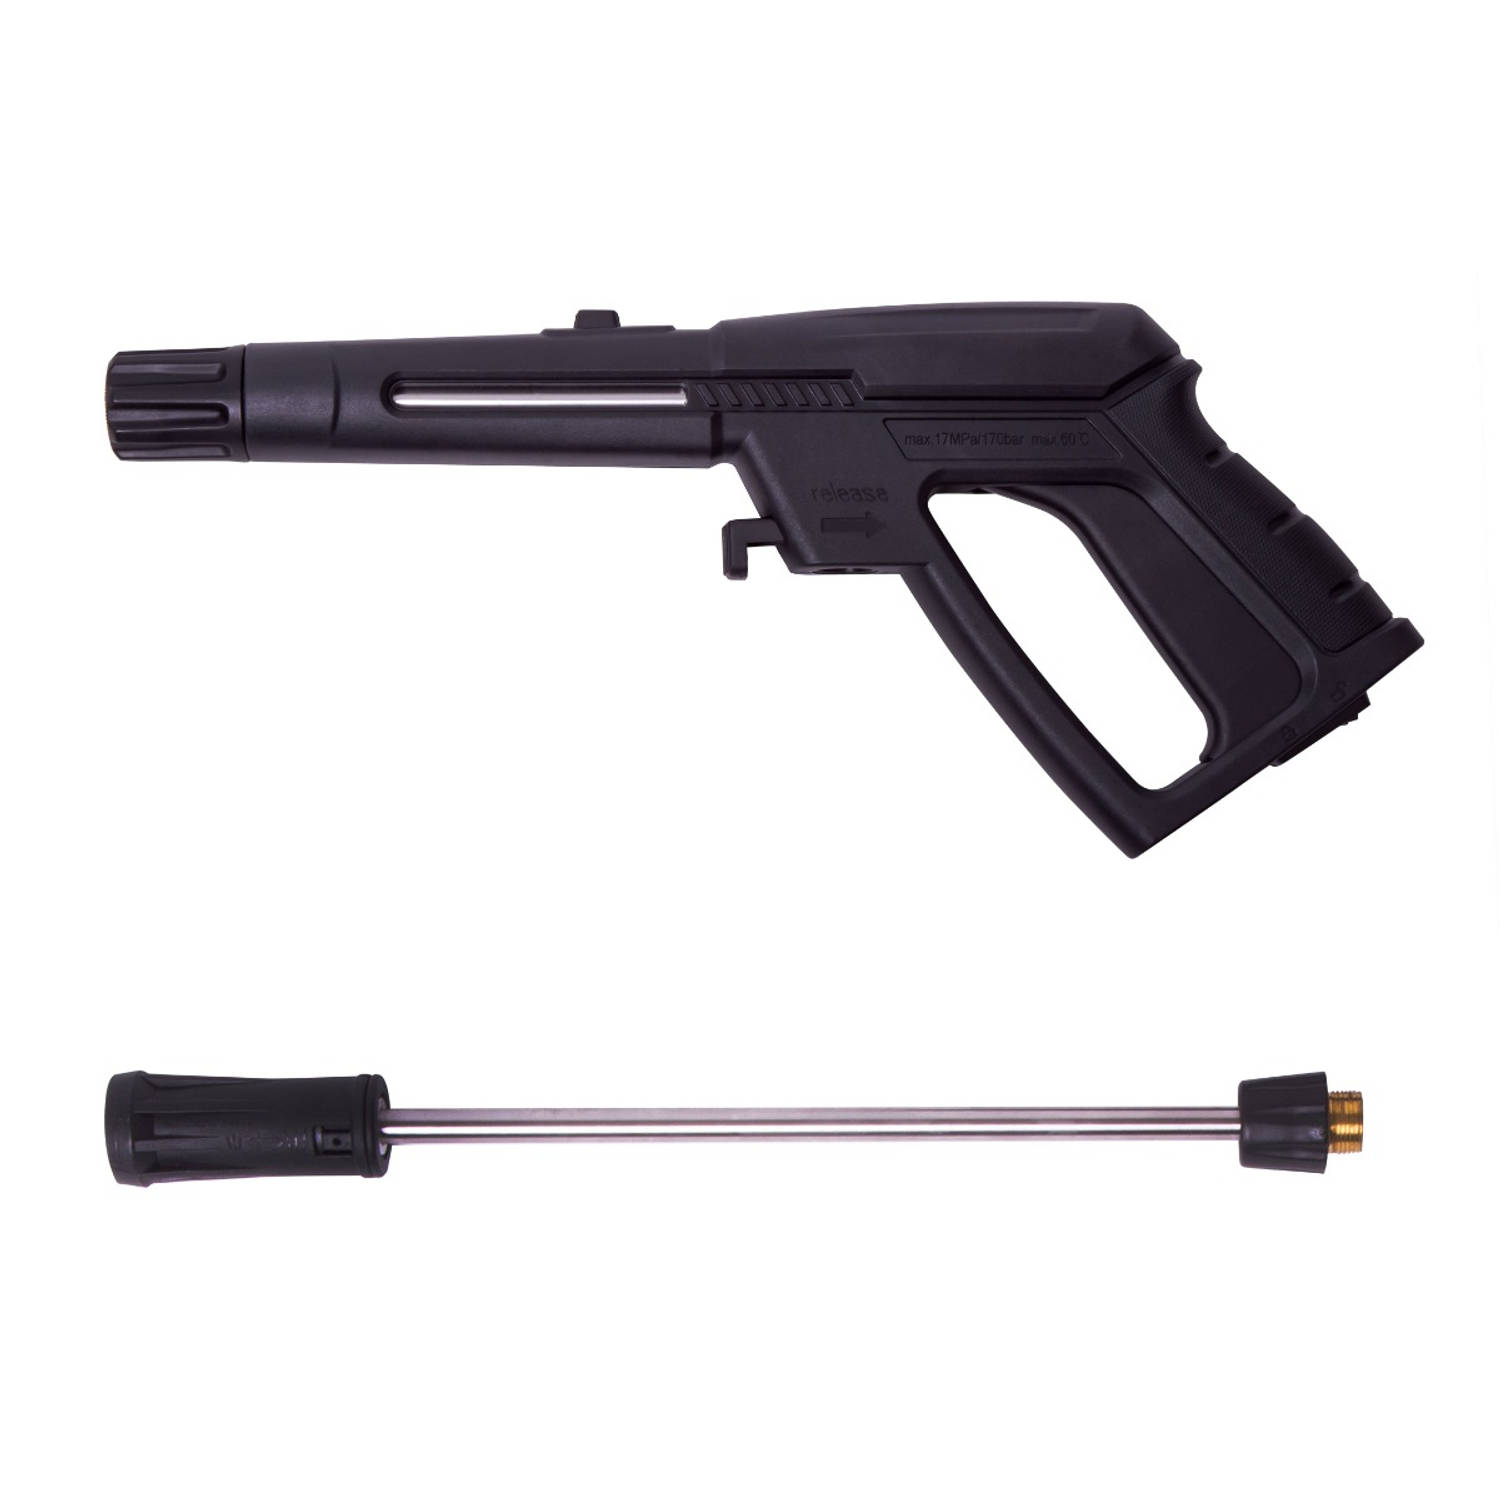 Vonroc Spuitpistool En Regelbare Spuitmond Voor Hogedrukreiniger Voor V22 Hogedrukreinigers